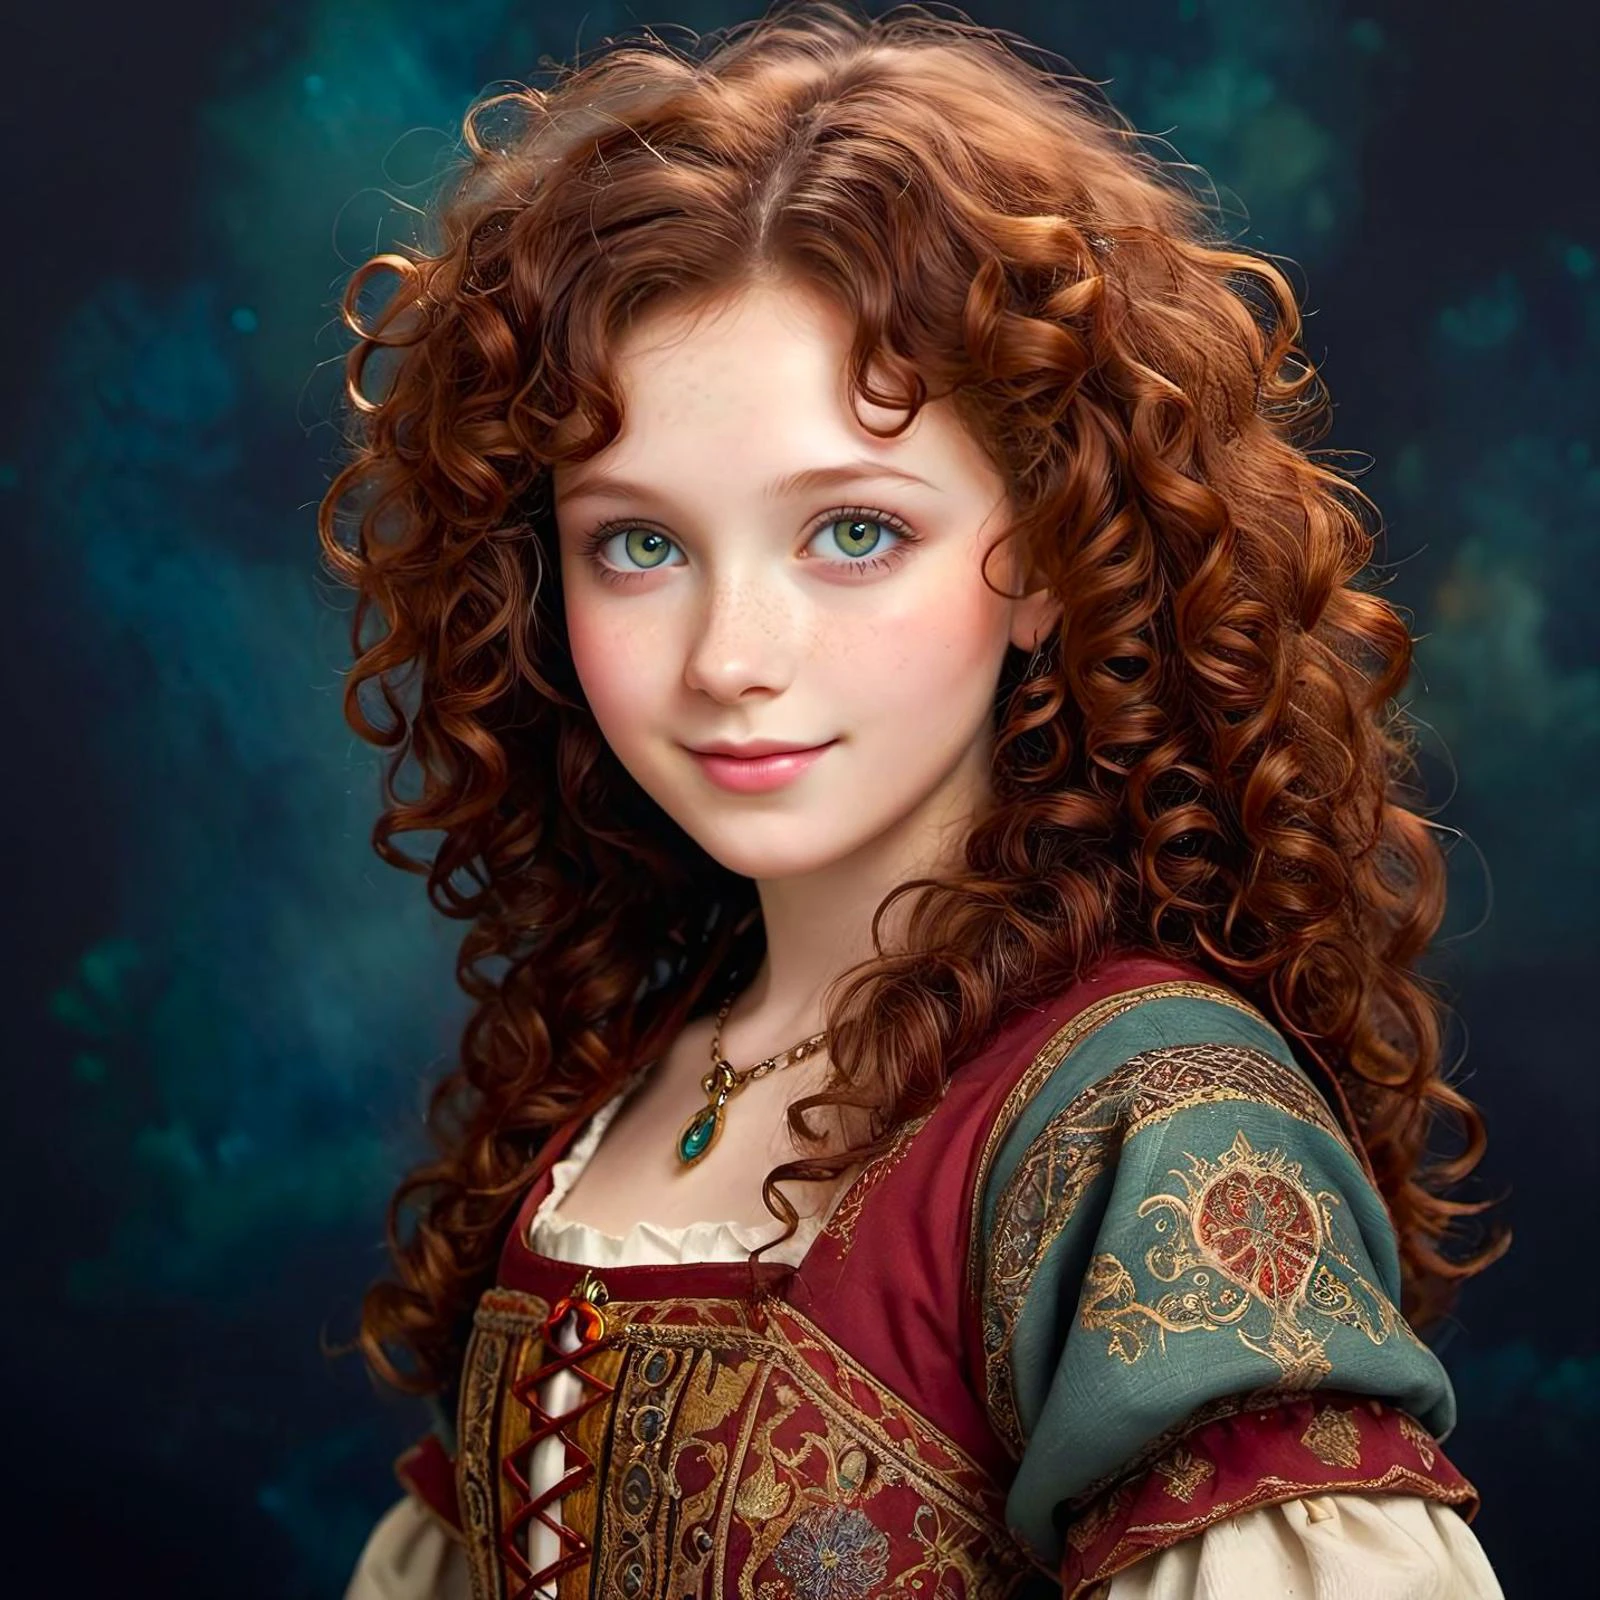 fantasia medieval,  uma garota de porcelana de 20 anos , feliz,  textura de pele orgânica macia, rosto delicado, olhos de jade, cabelo cacheado castanho ruivo escuro, eclético, fundo escuro